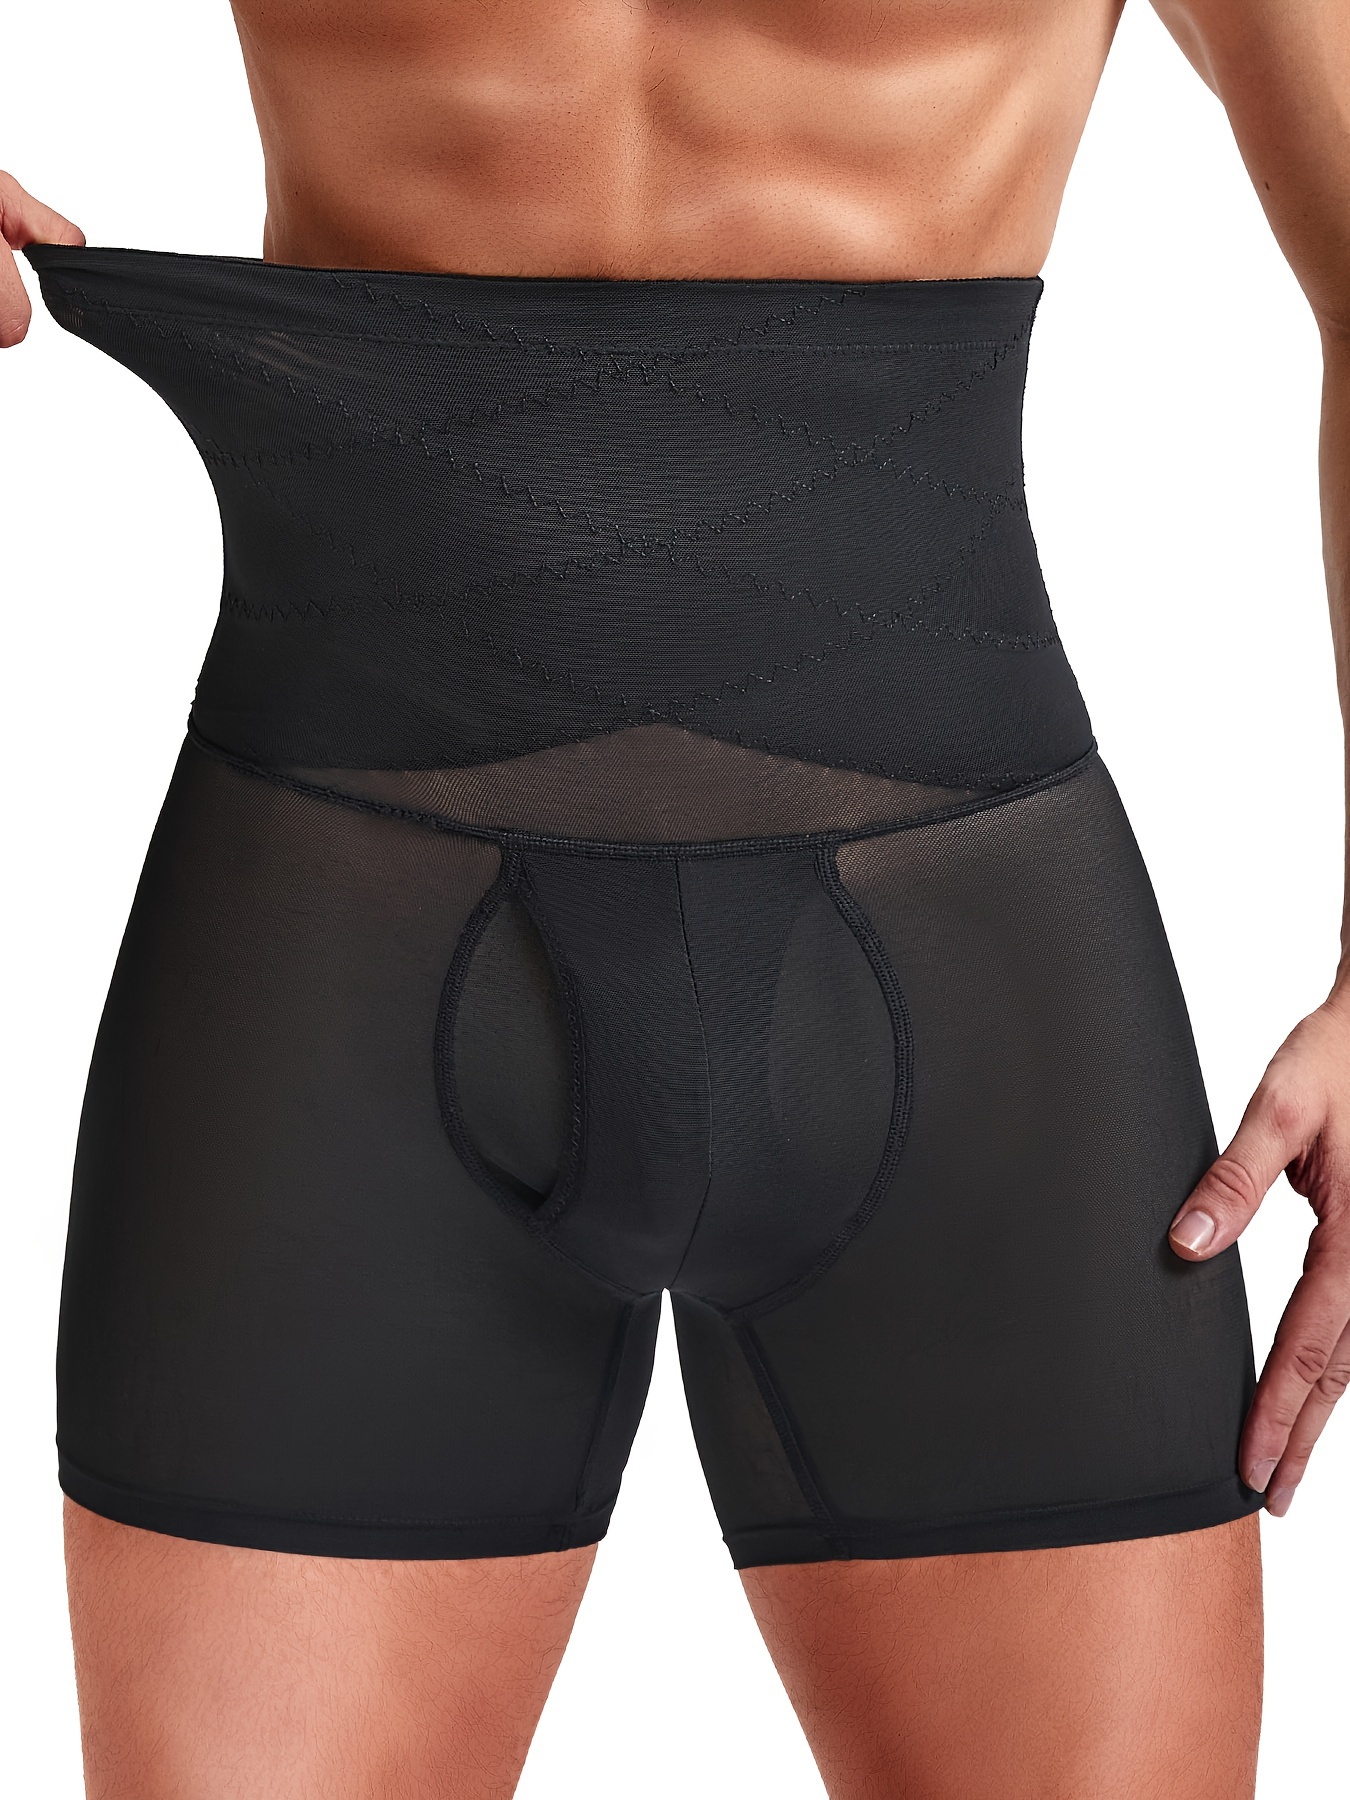 Tummy Control Underwear, Waist Trainer Briefs